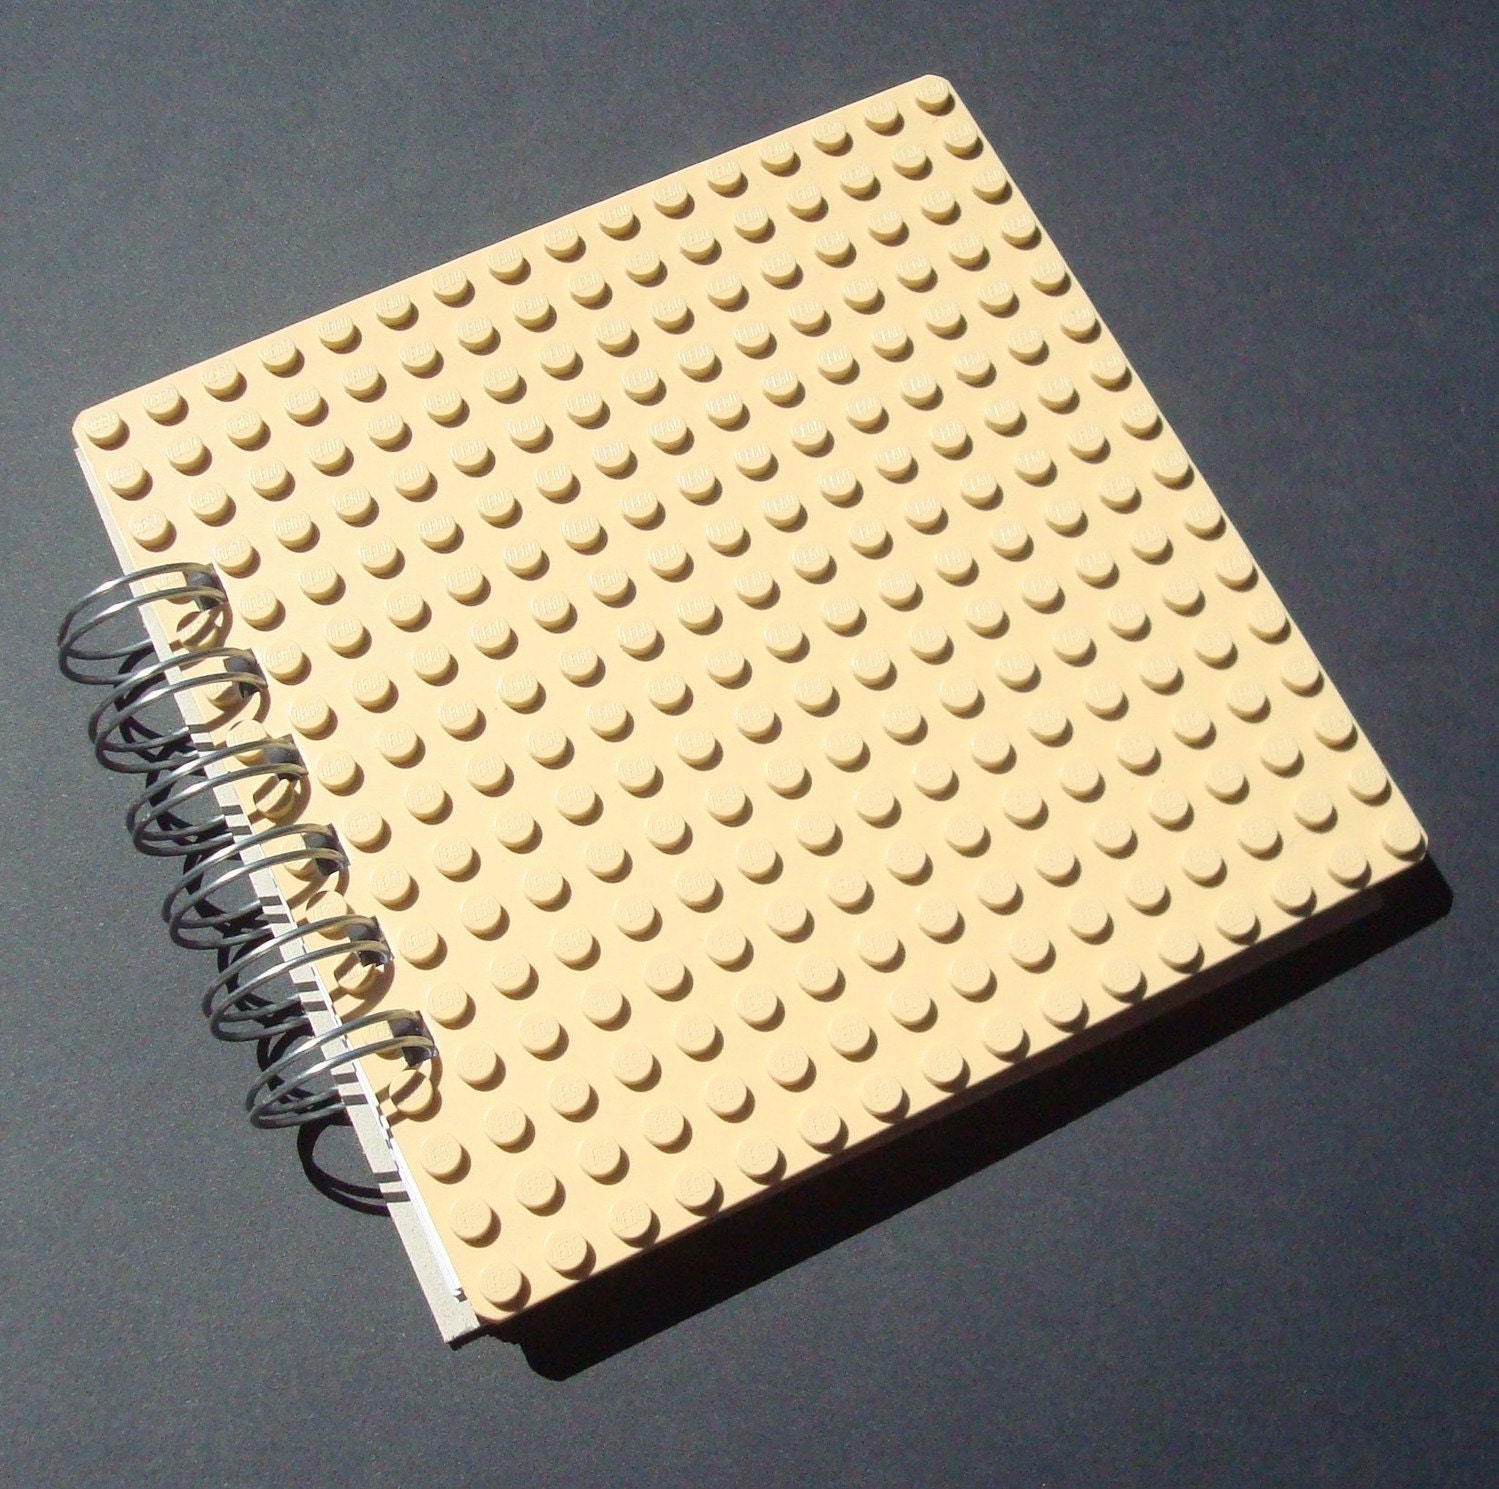 Lego Spiral Bound Journal Beige